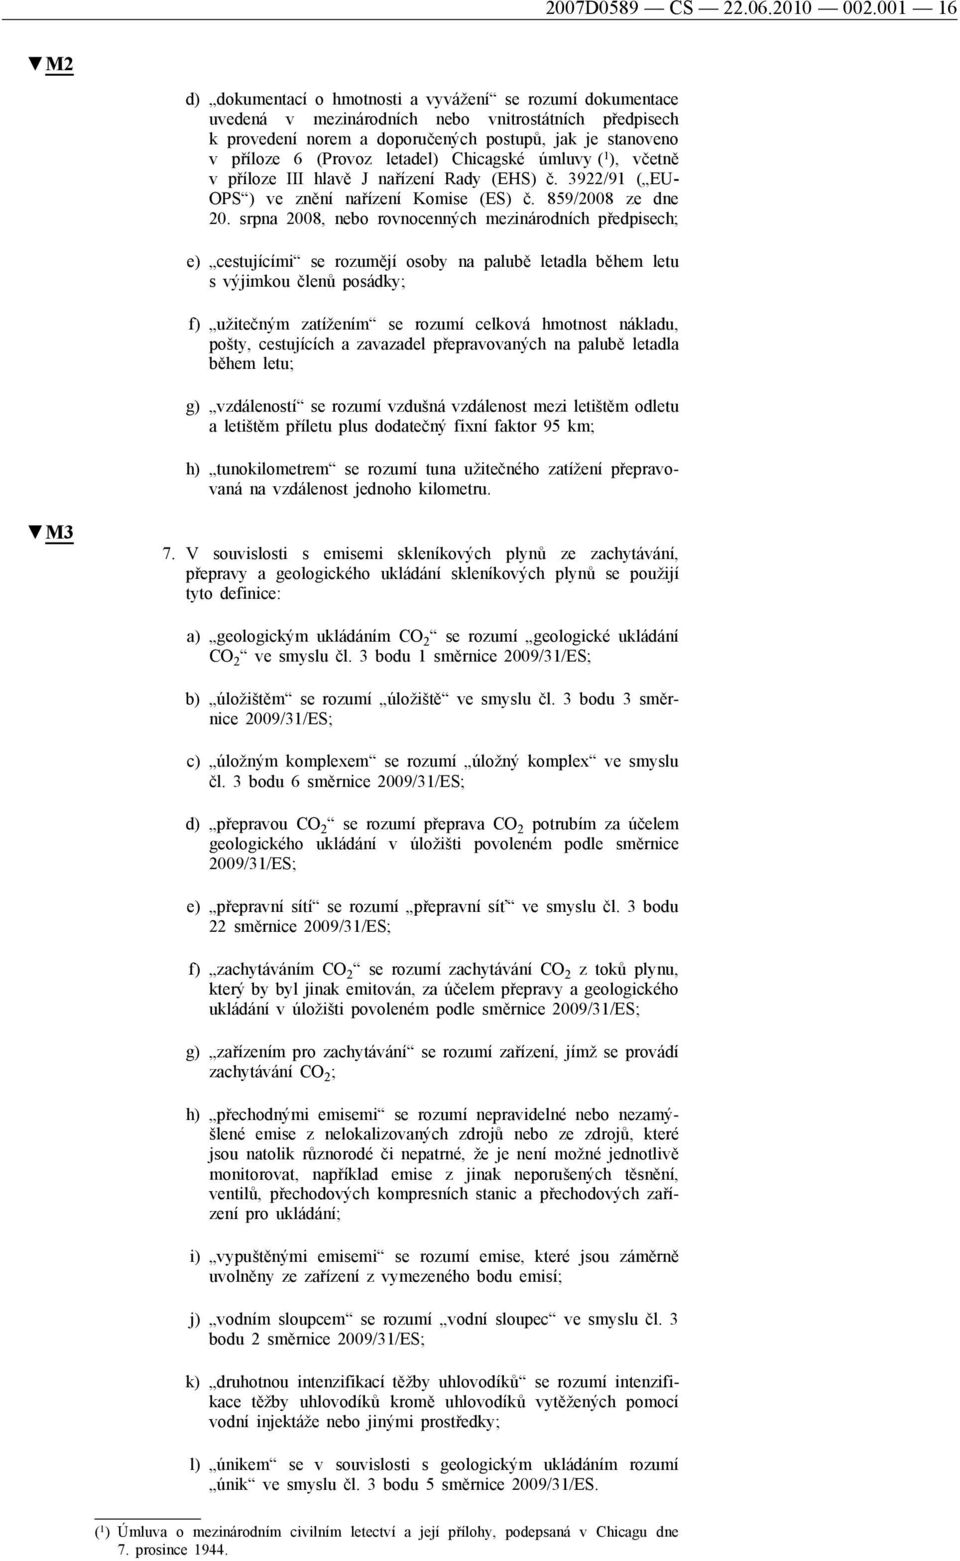 (Provoz letadel) Chicagské úmluvy ( 1 ), včetně v příloze III hlavě J nařízení Rady (EHS) č. 3922/91 ( EU- OPS ) ve znění nařízení Komise (ES) č. 859/2008 ze dne 20.